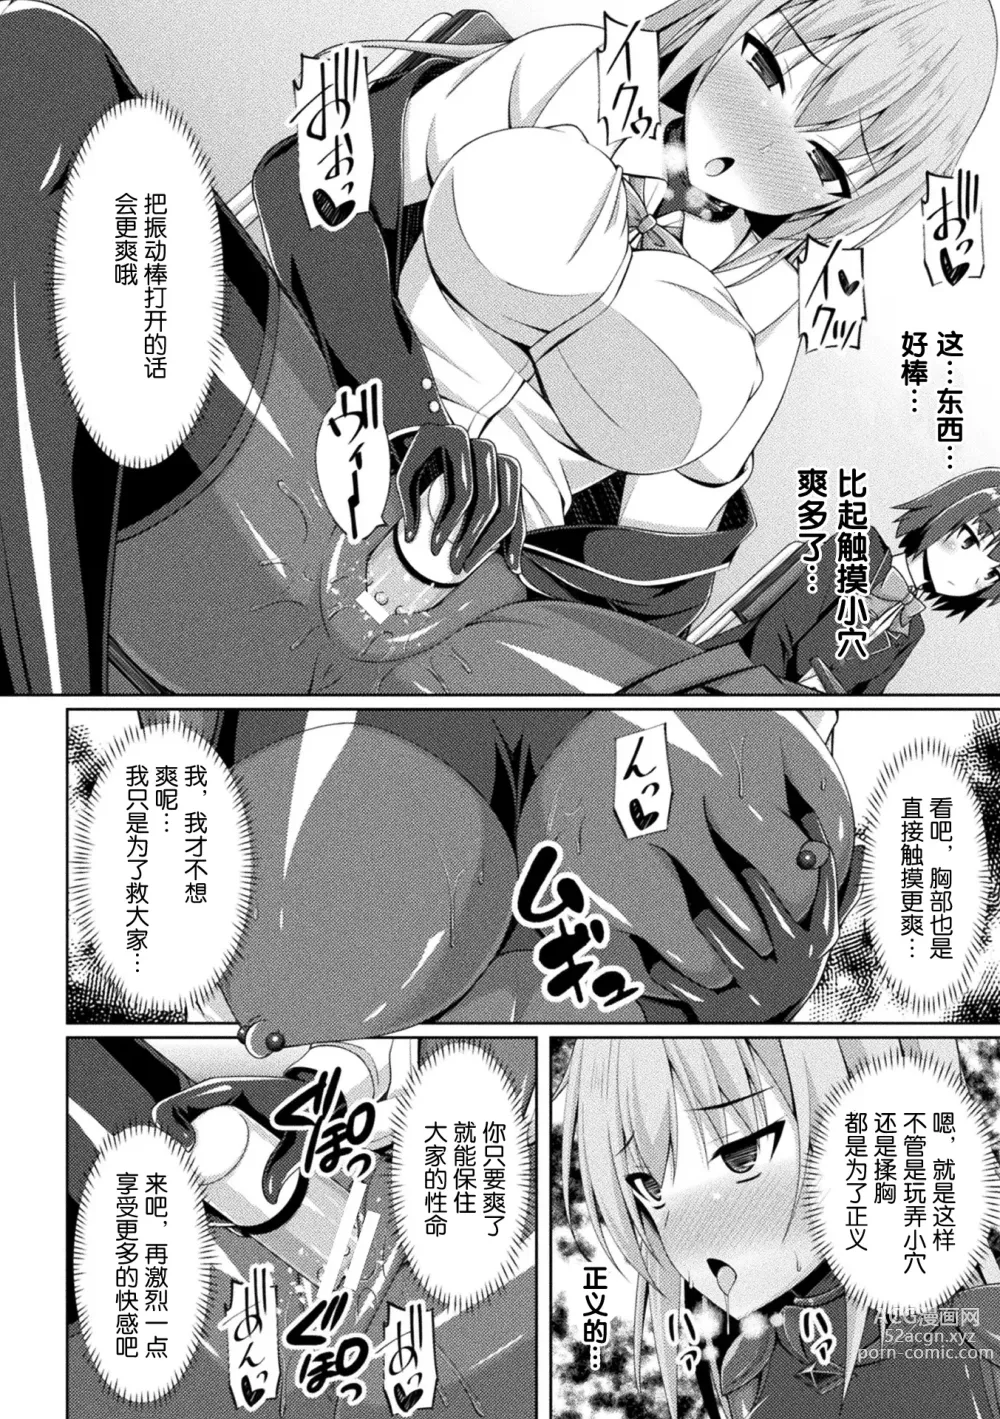 Page 8 of manga Kougyokutenki Glitter Stars ep3. Kuzureru Nichijou, Kuraki En no Yadoru Toki